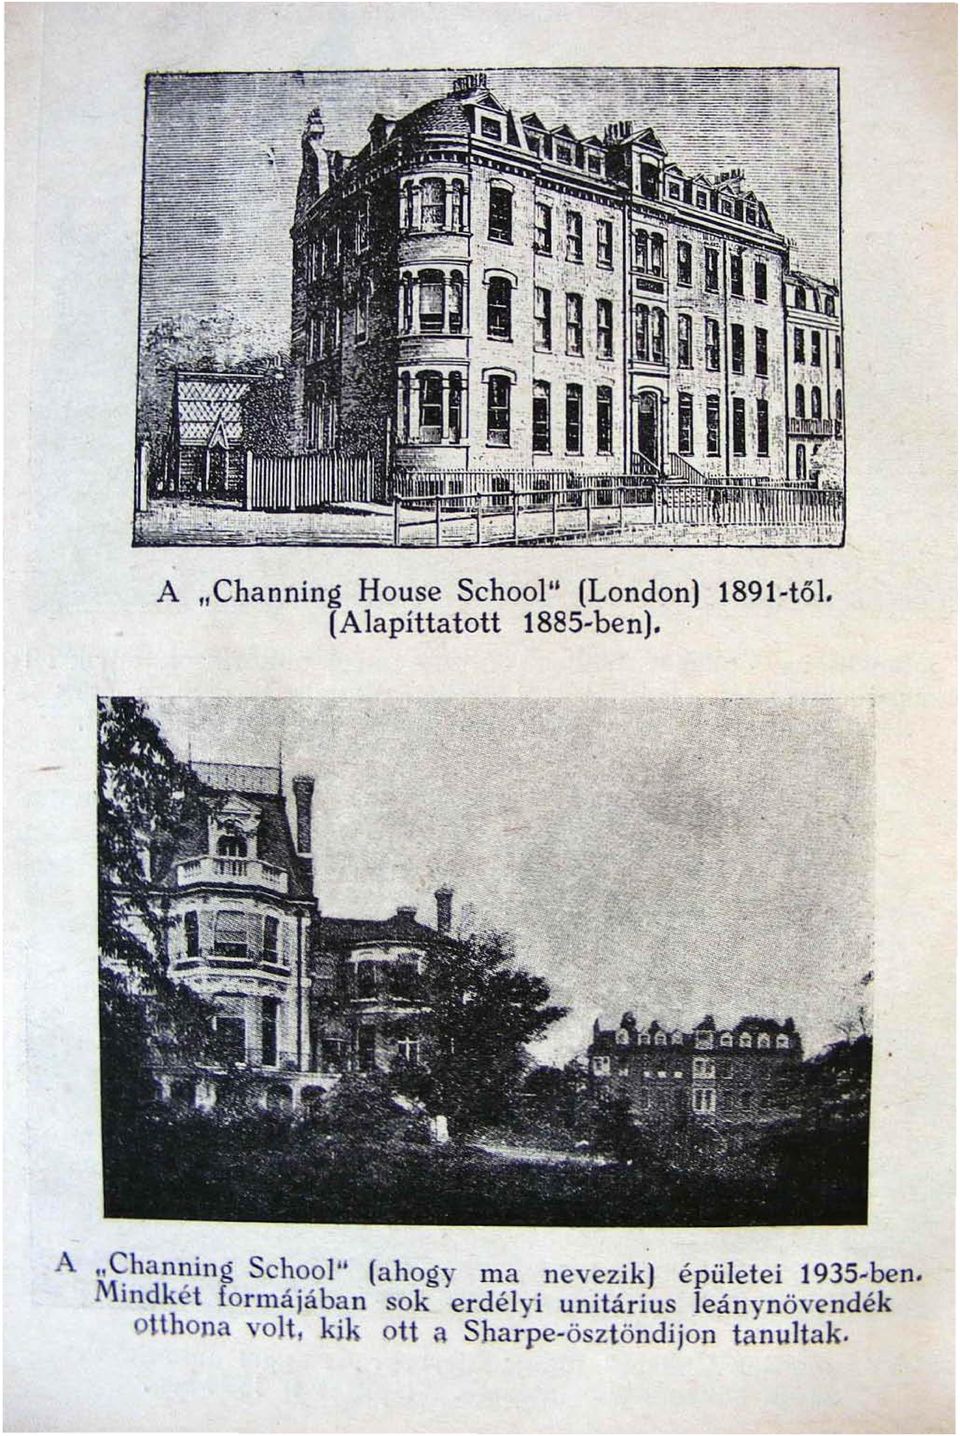 - A "Cha nning School" (ahogy ma nevezik) épületei 1935-ben.